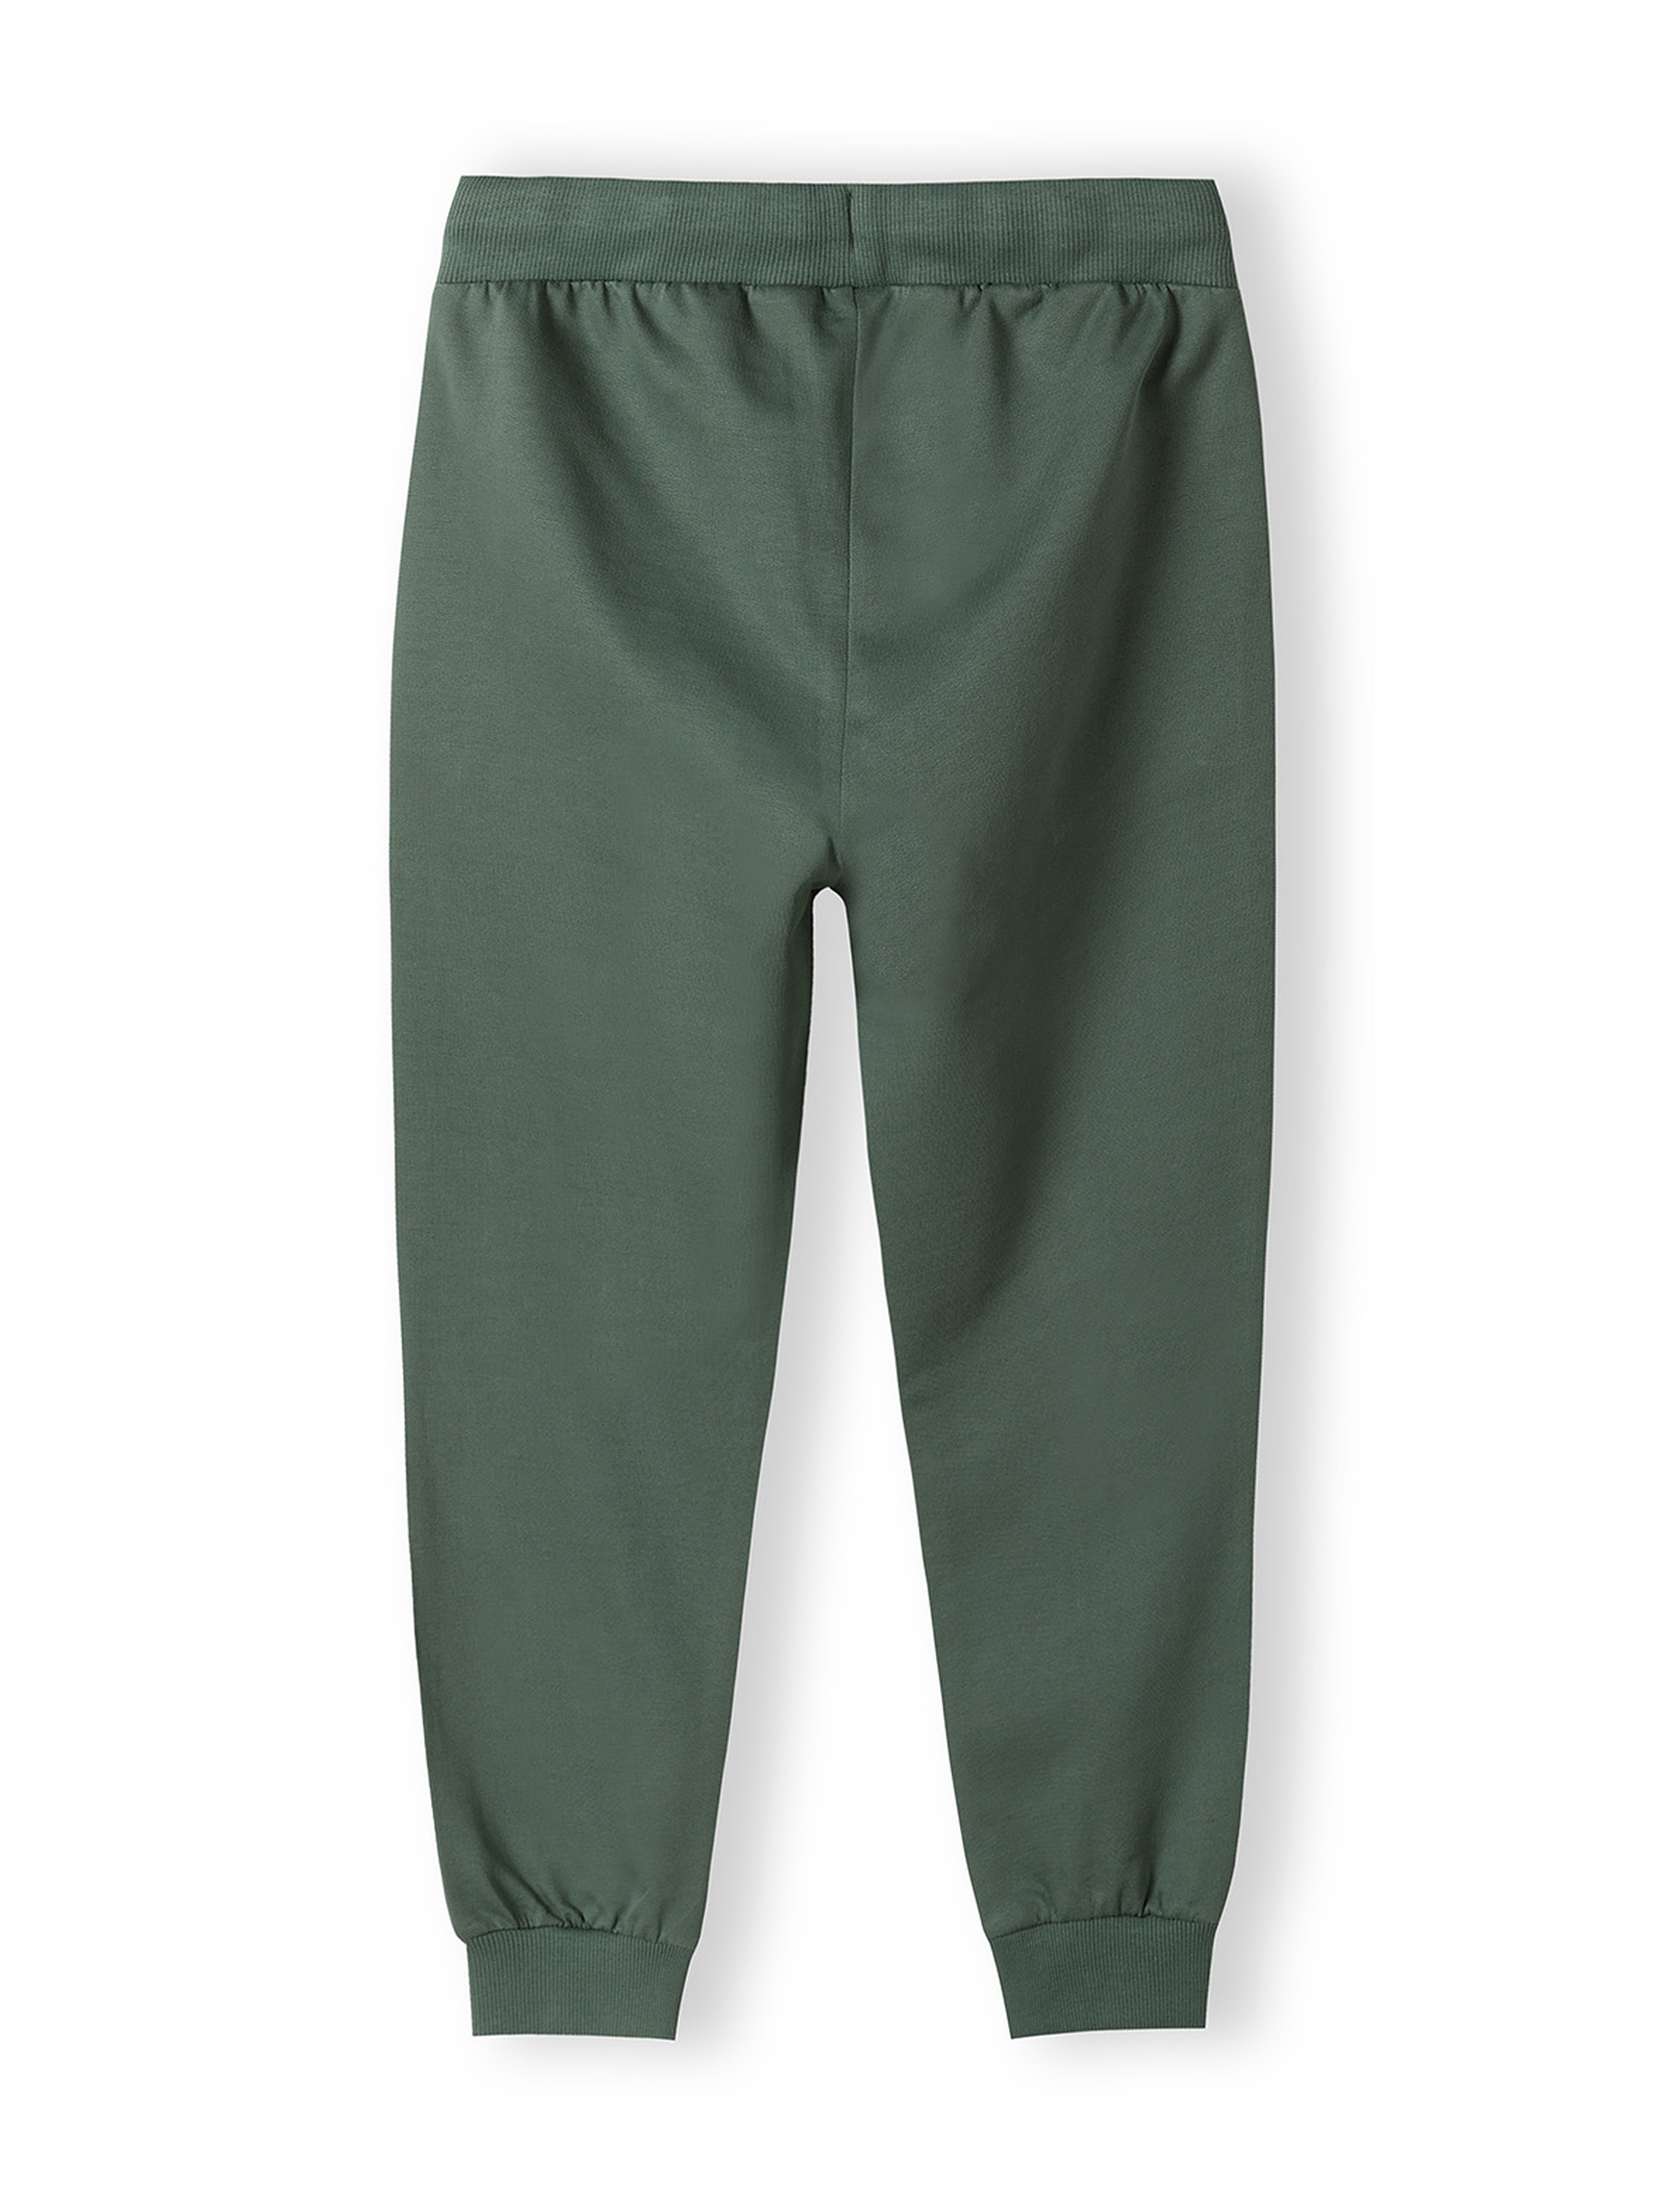 Zielone spodnie dresowe regular dla chłopca